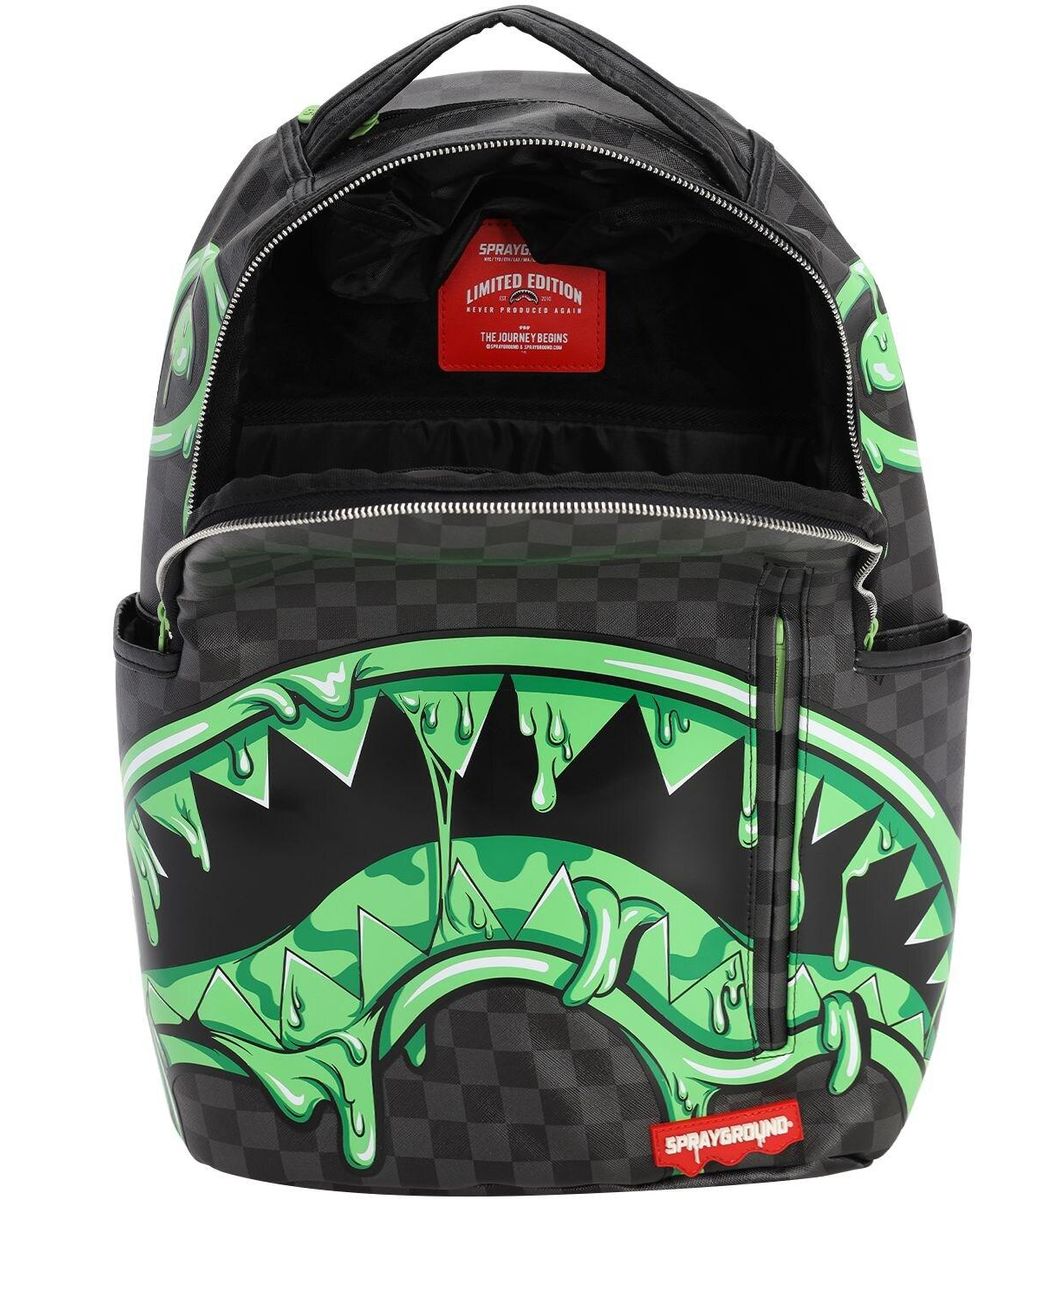 Sprayground Slime Shark Backpack